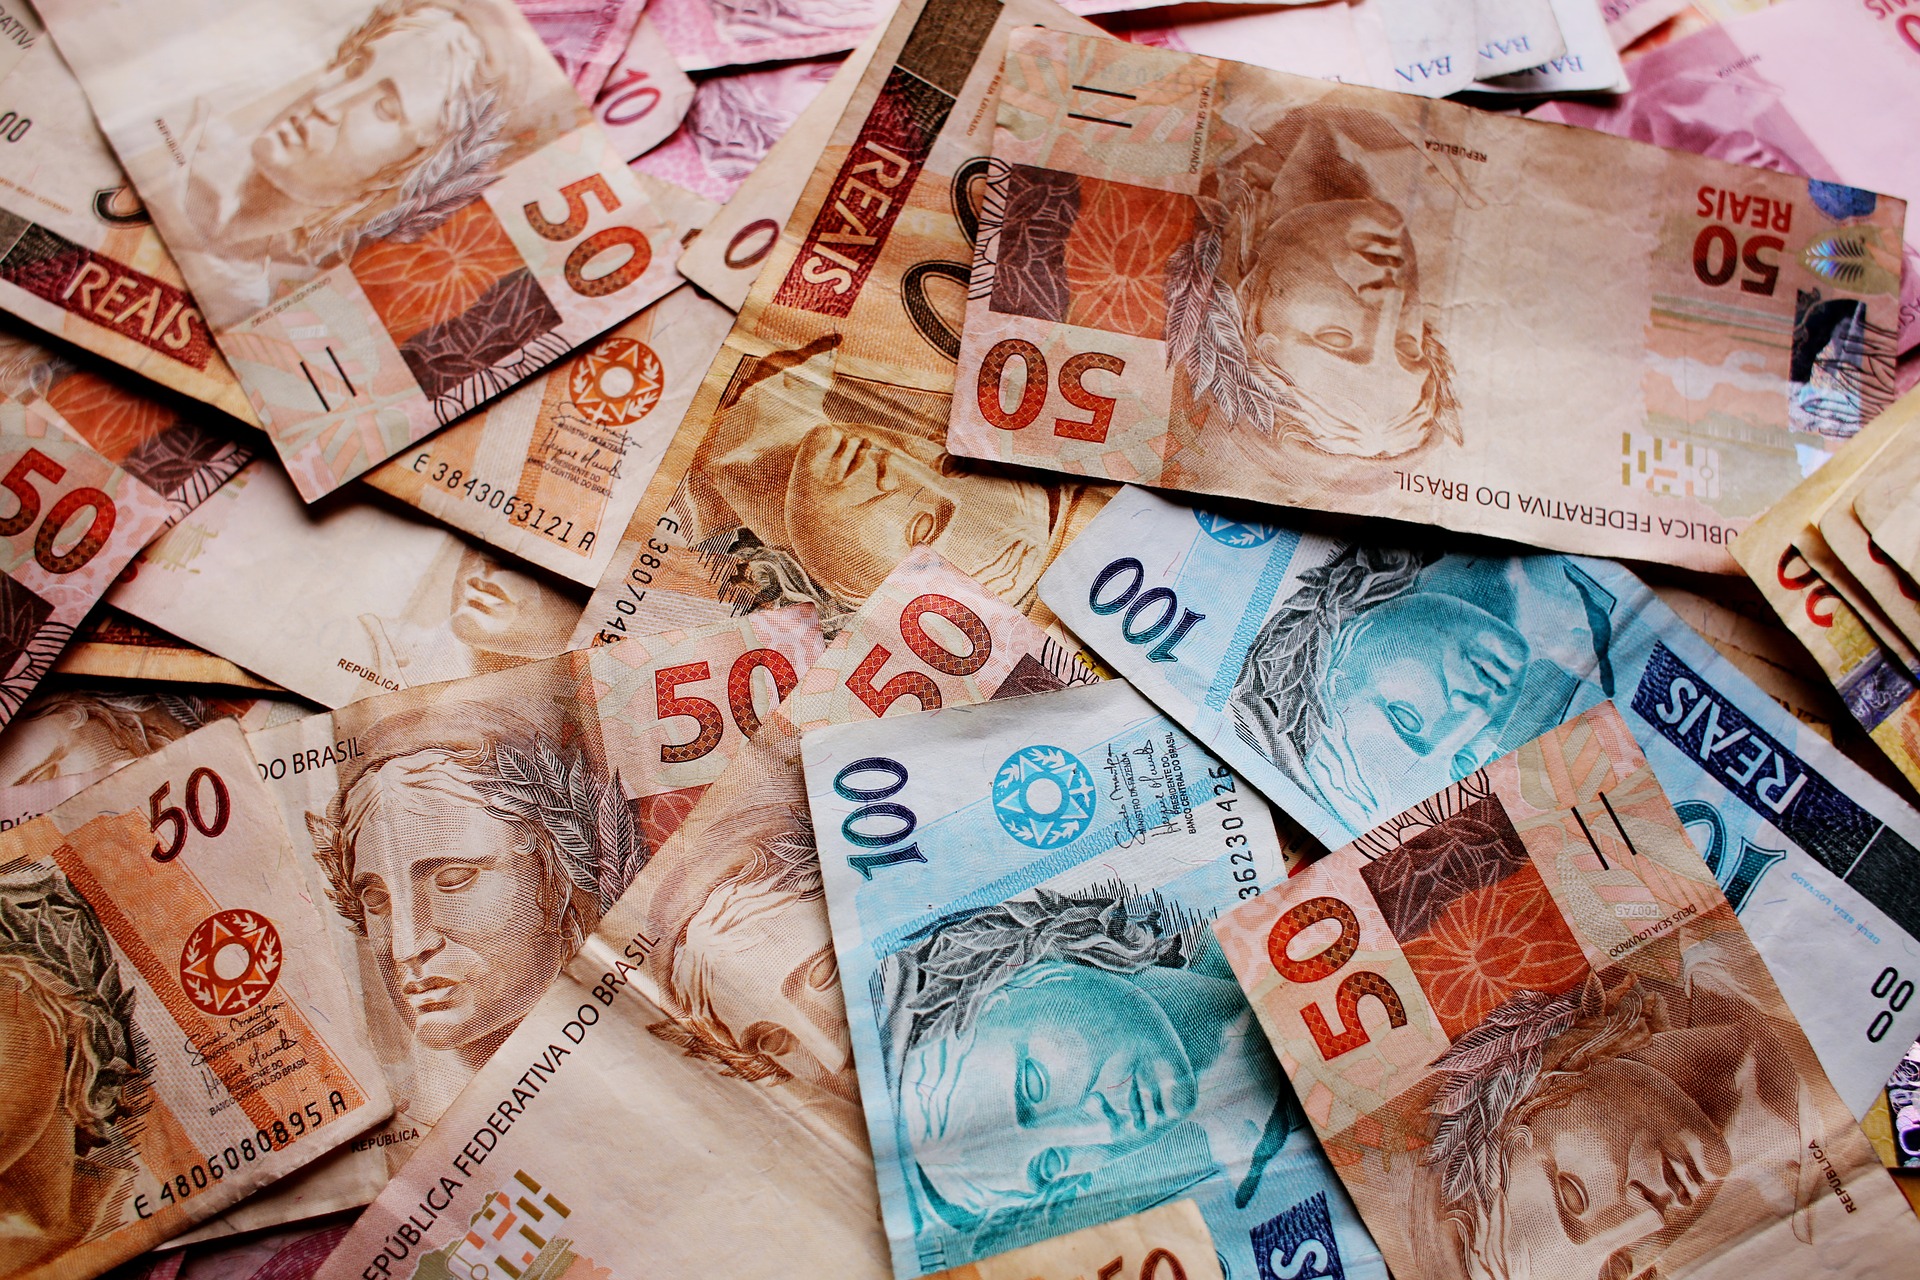 Enquanto uns recebem centavos, alguns brasileiros receberão mais de 100 mil reais de dinheiro esquecido. (18/03)